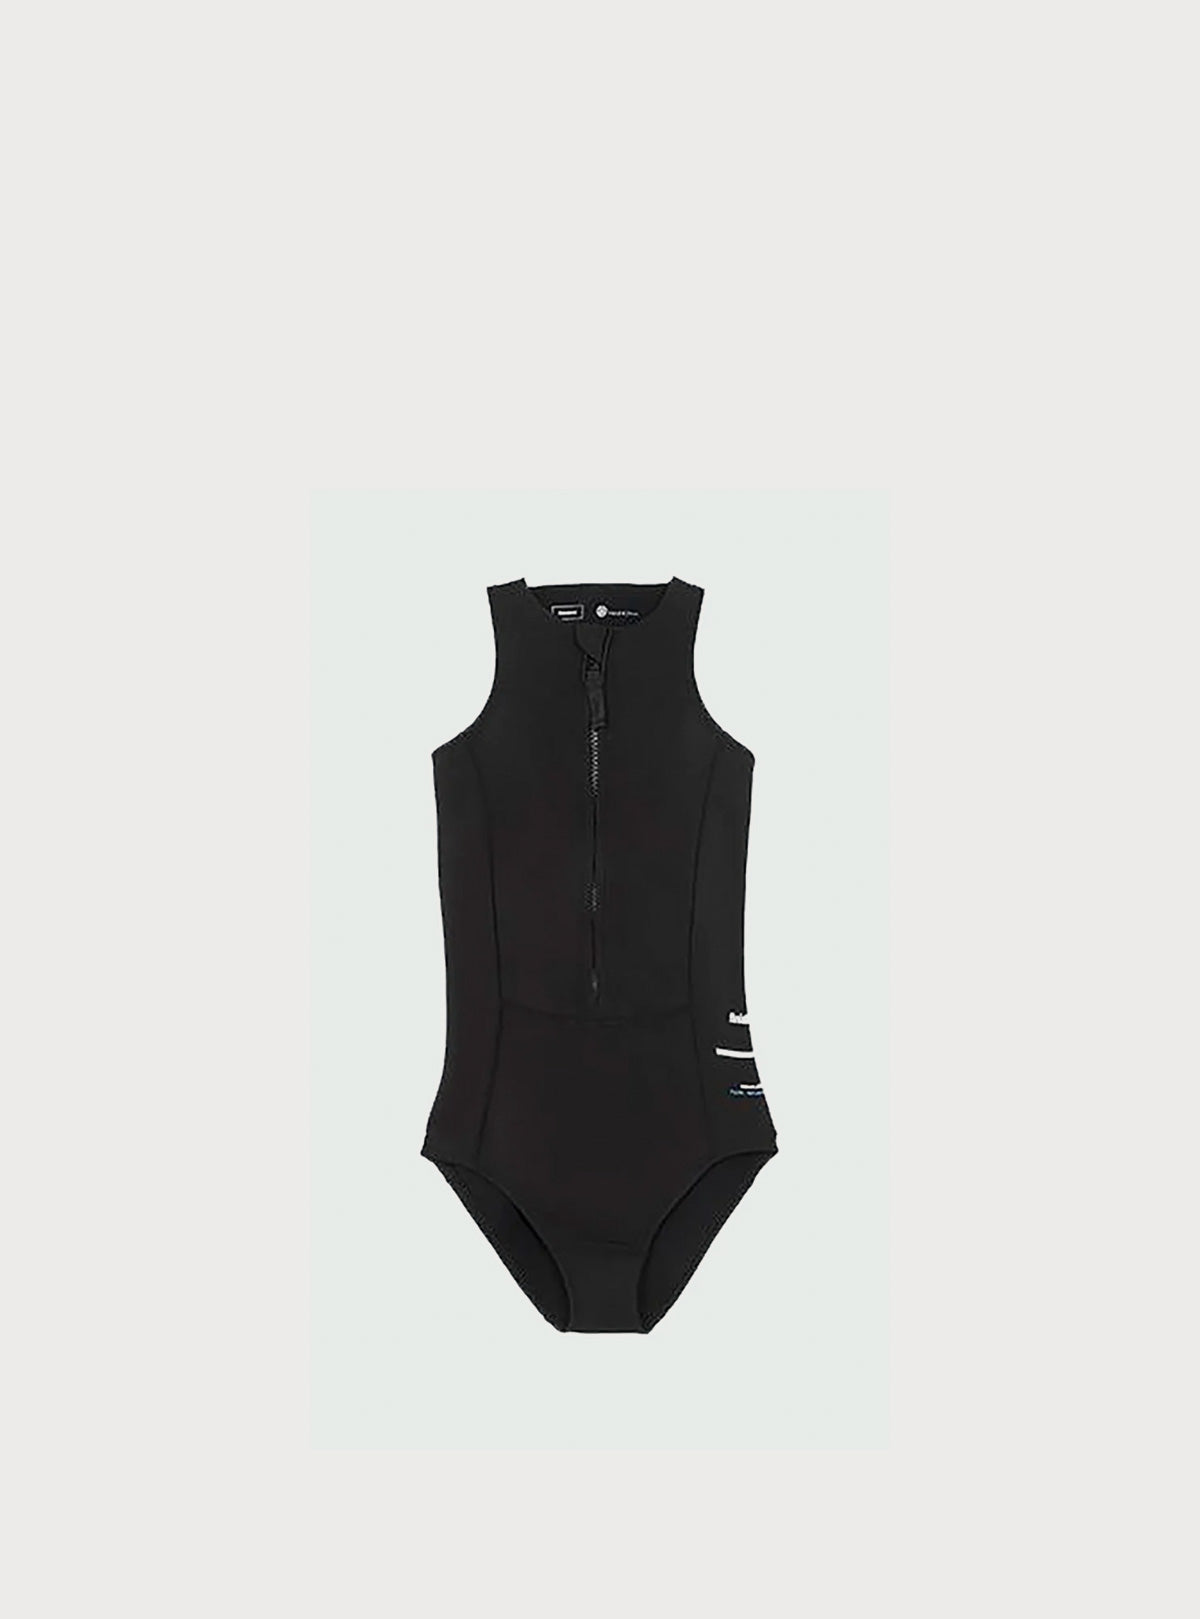 Nieuwland - Yulex Swimsuit SS - Black